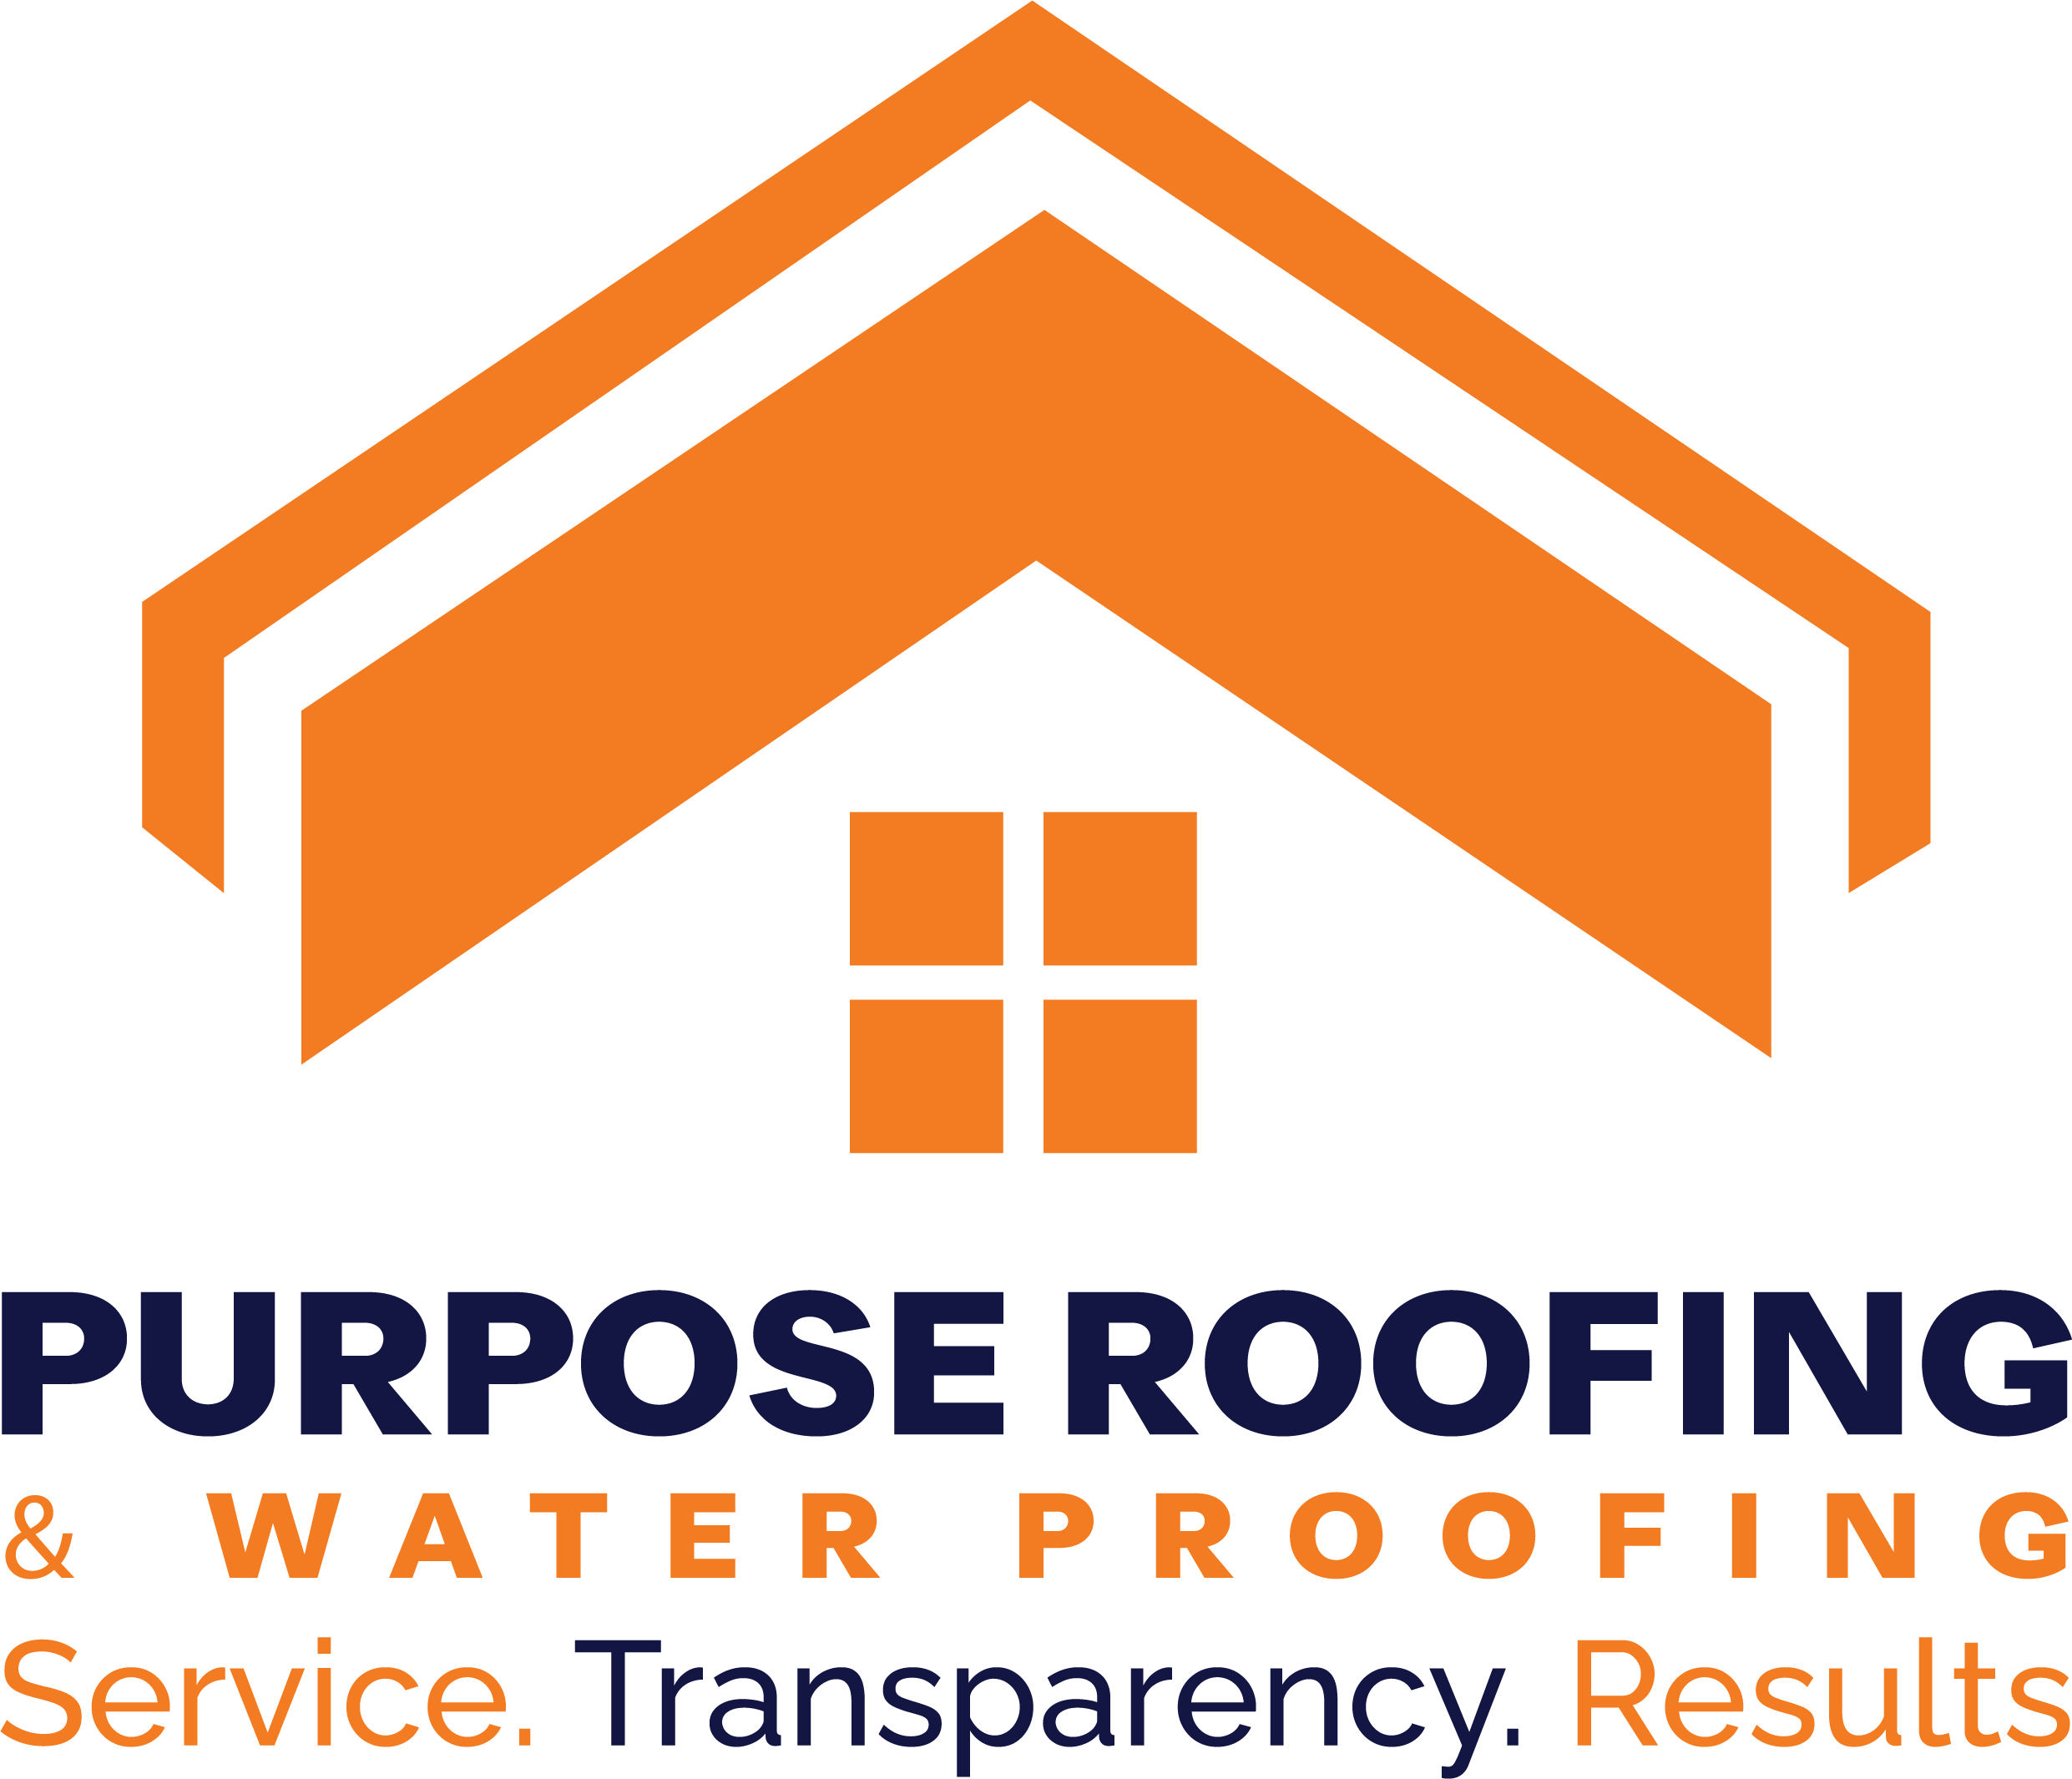 Purpose Roofing & Waterproofing